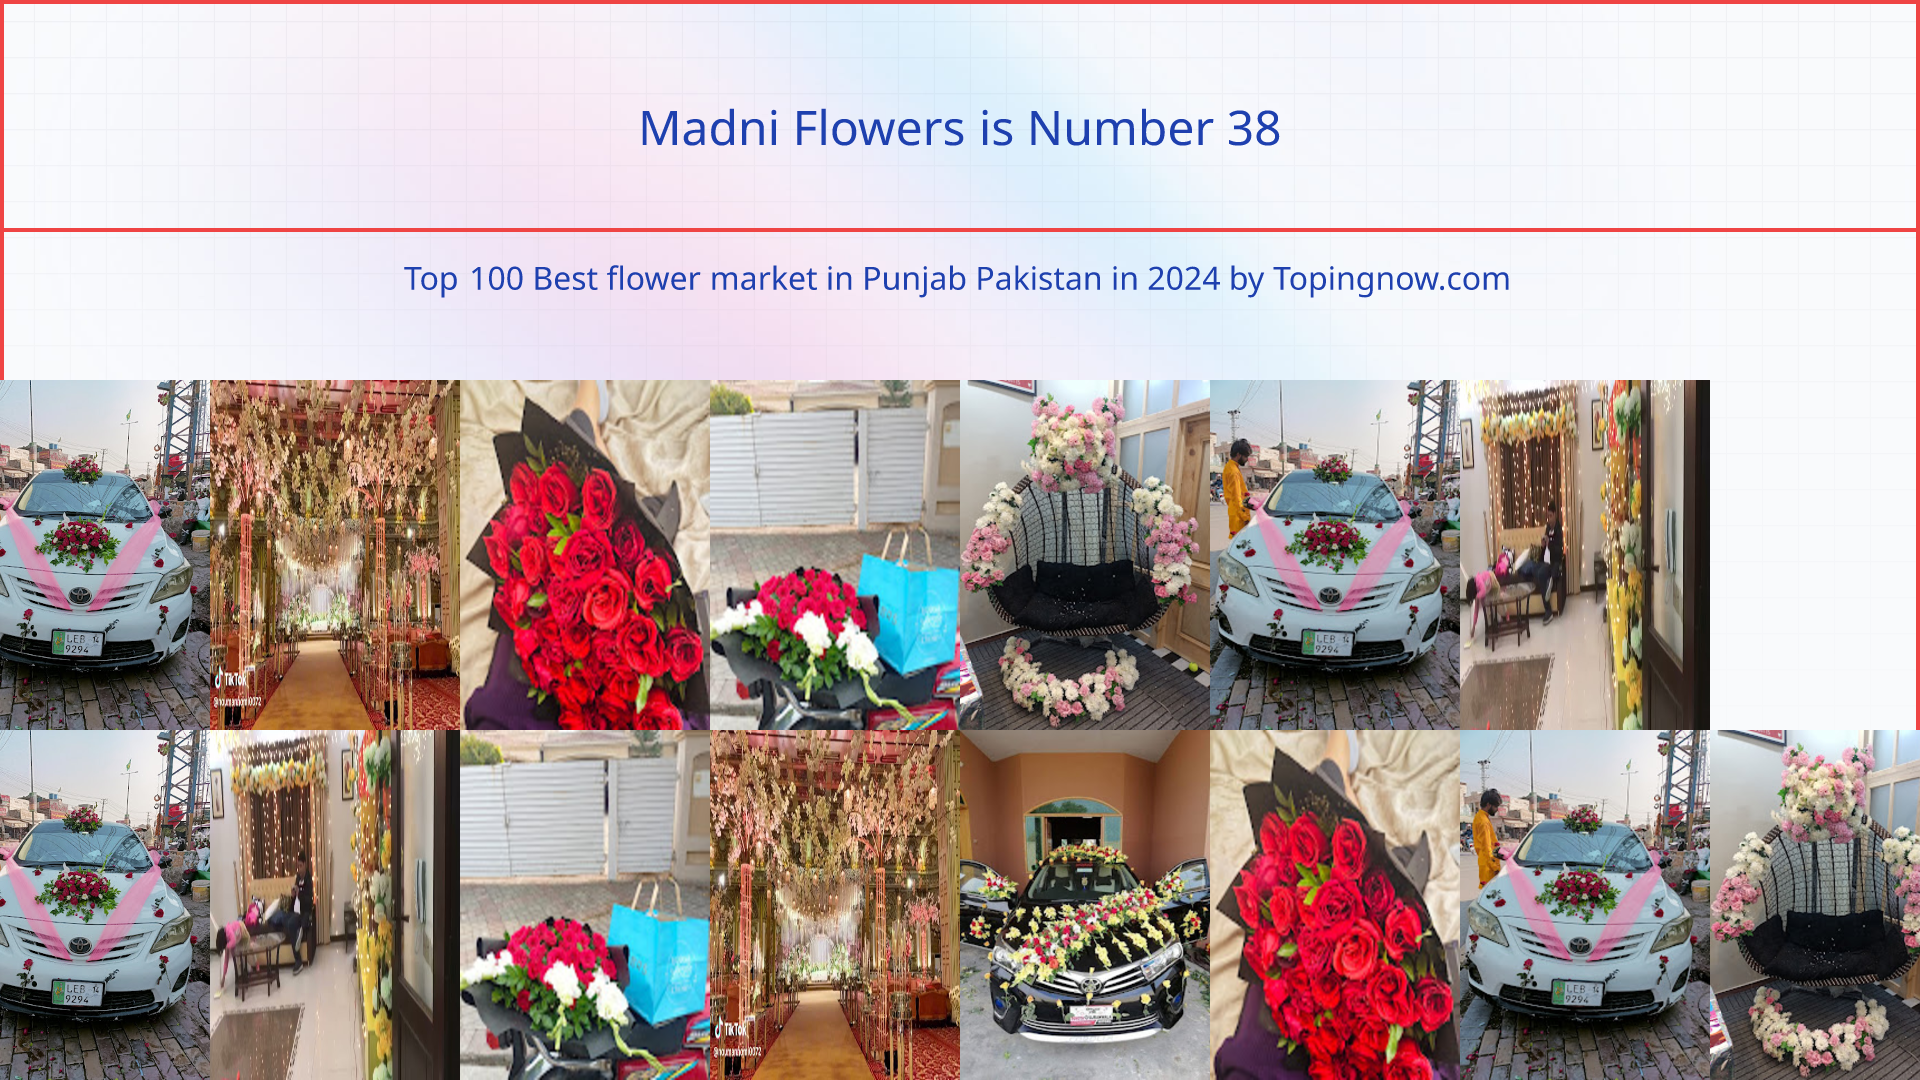 Madni Flowers: Top 100 Best flower market in Punjab Pakistan in 2024